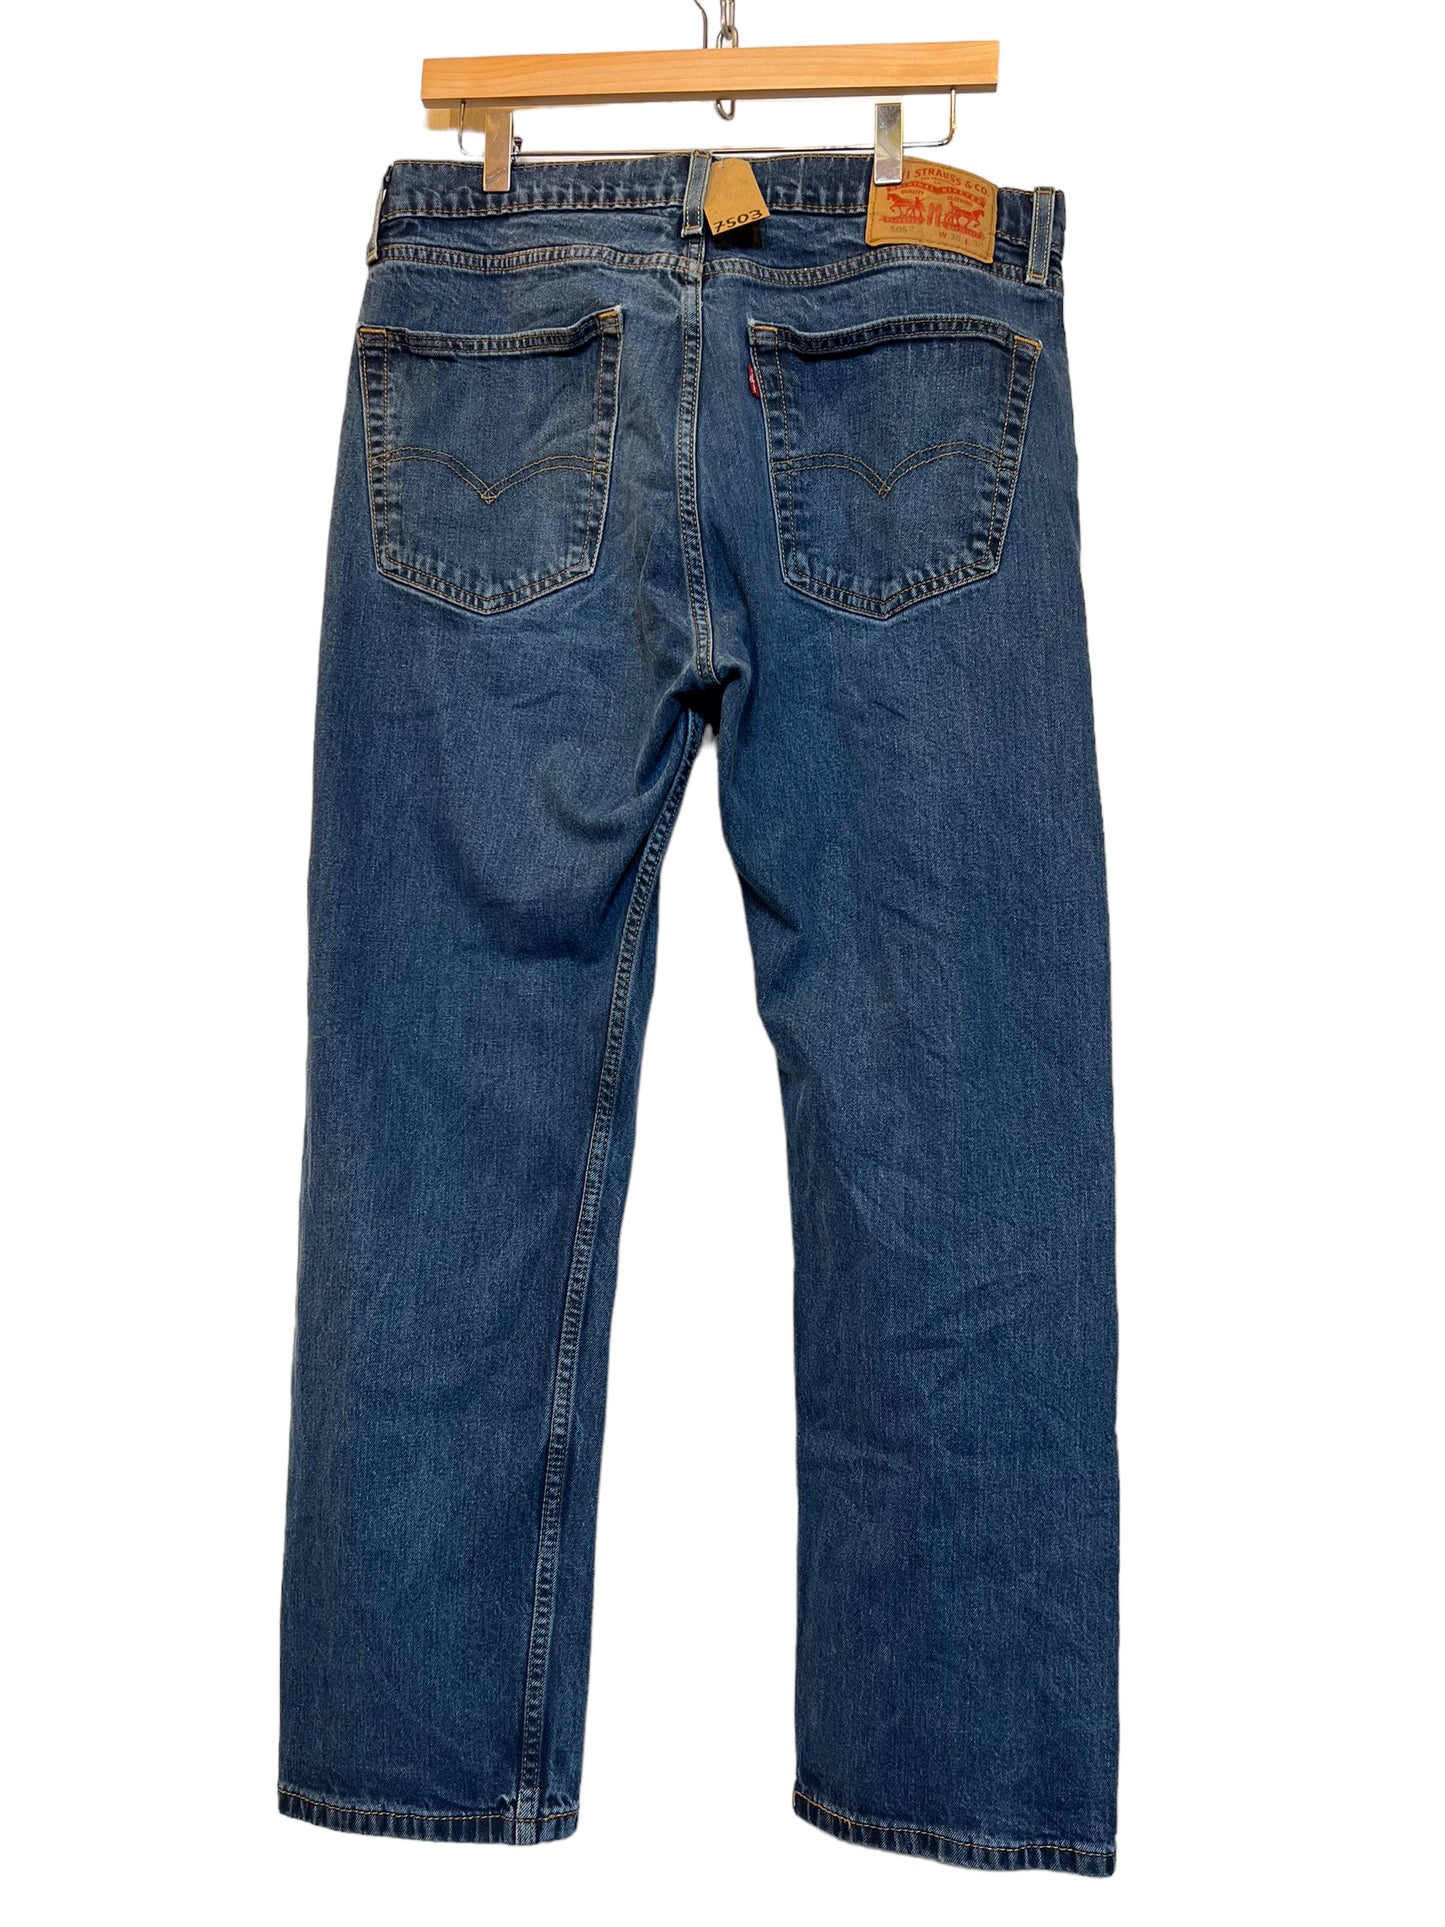 Levi 505 jeans (36x30)